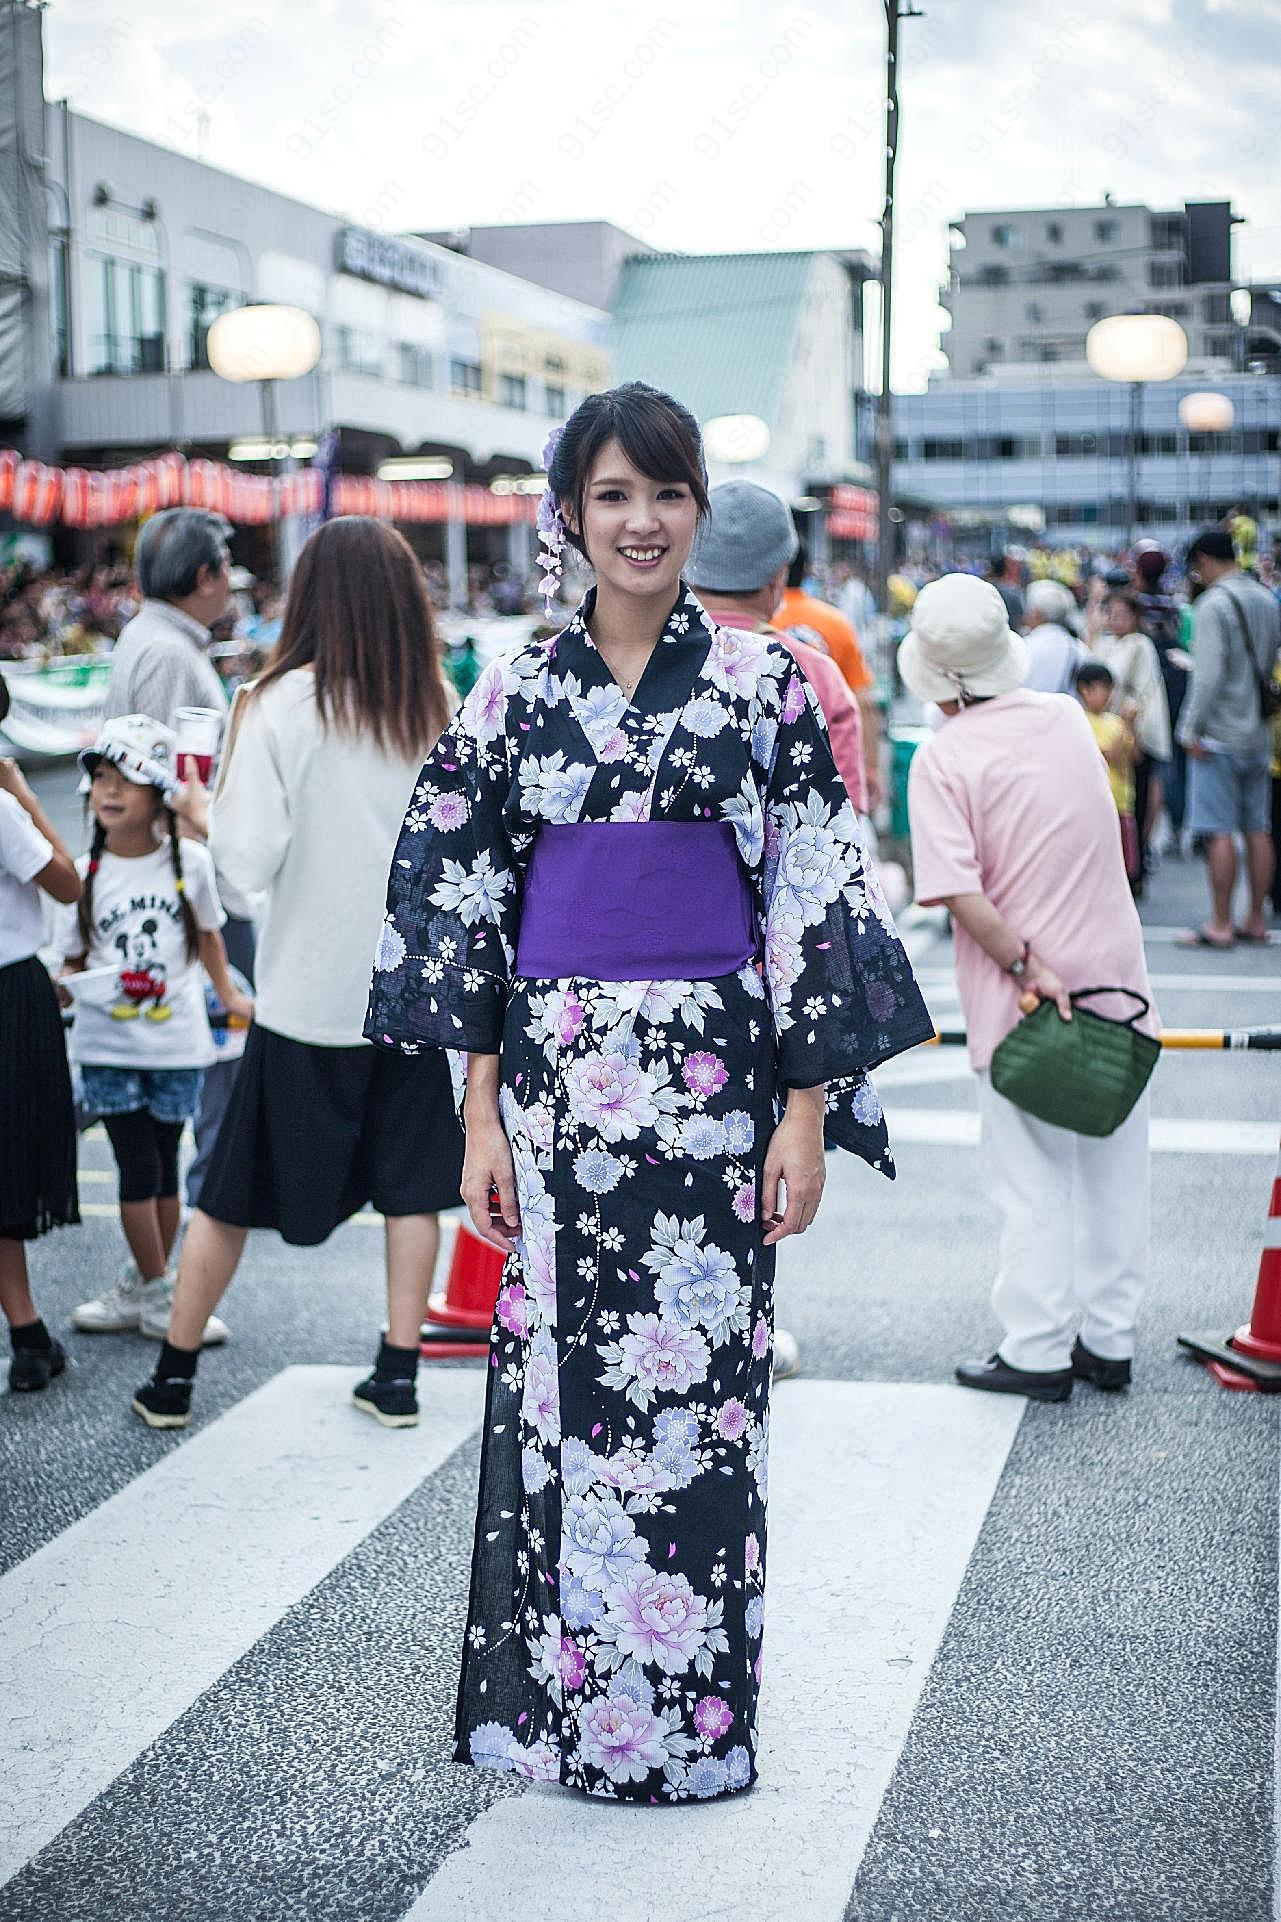 日本和服靓丽美女图片人物摄影